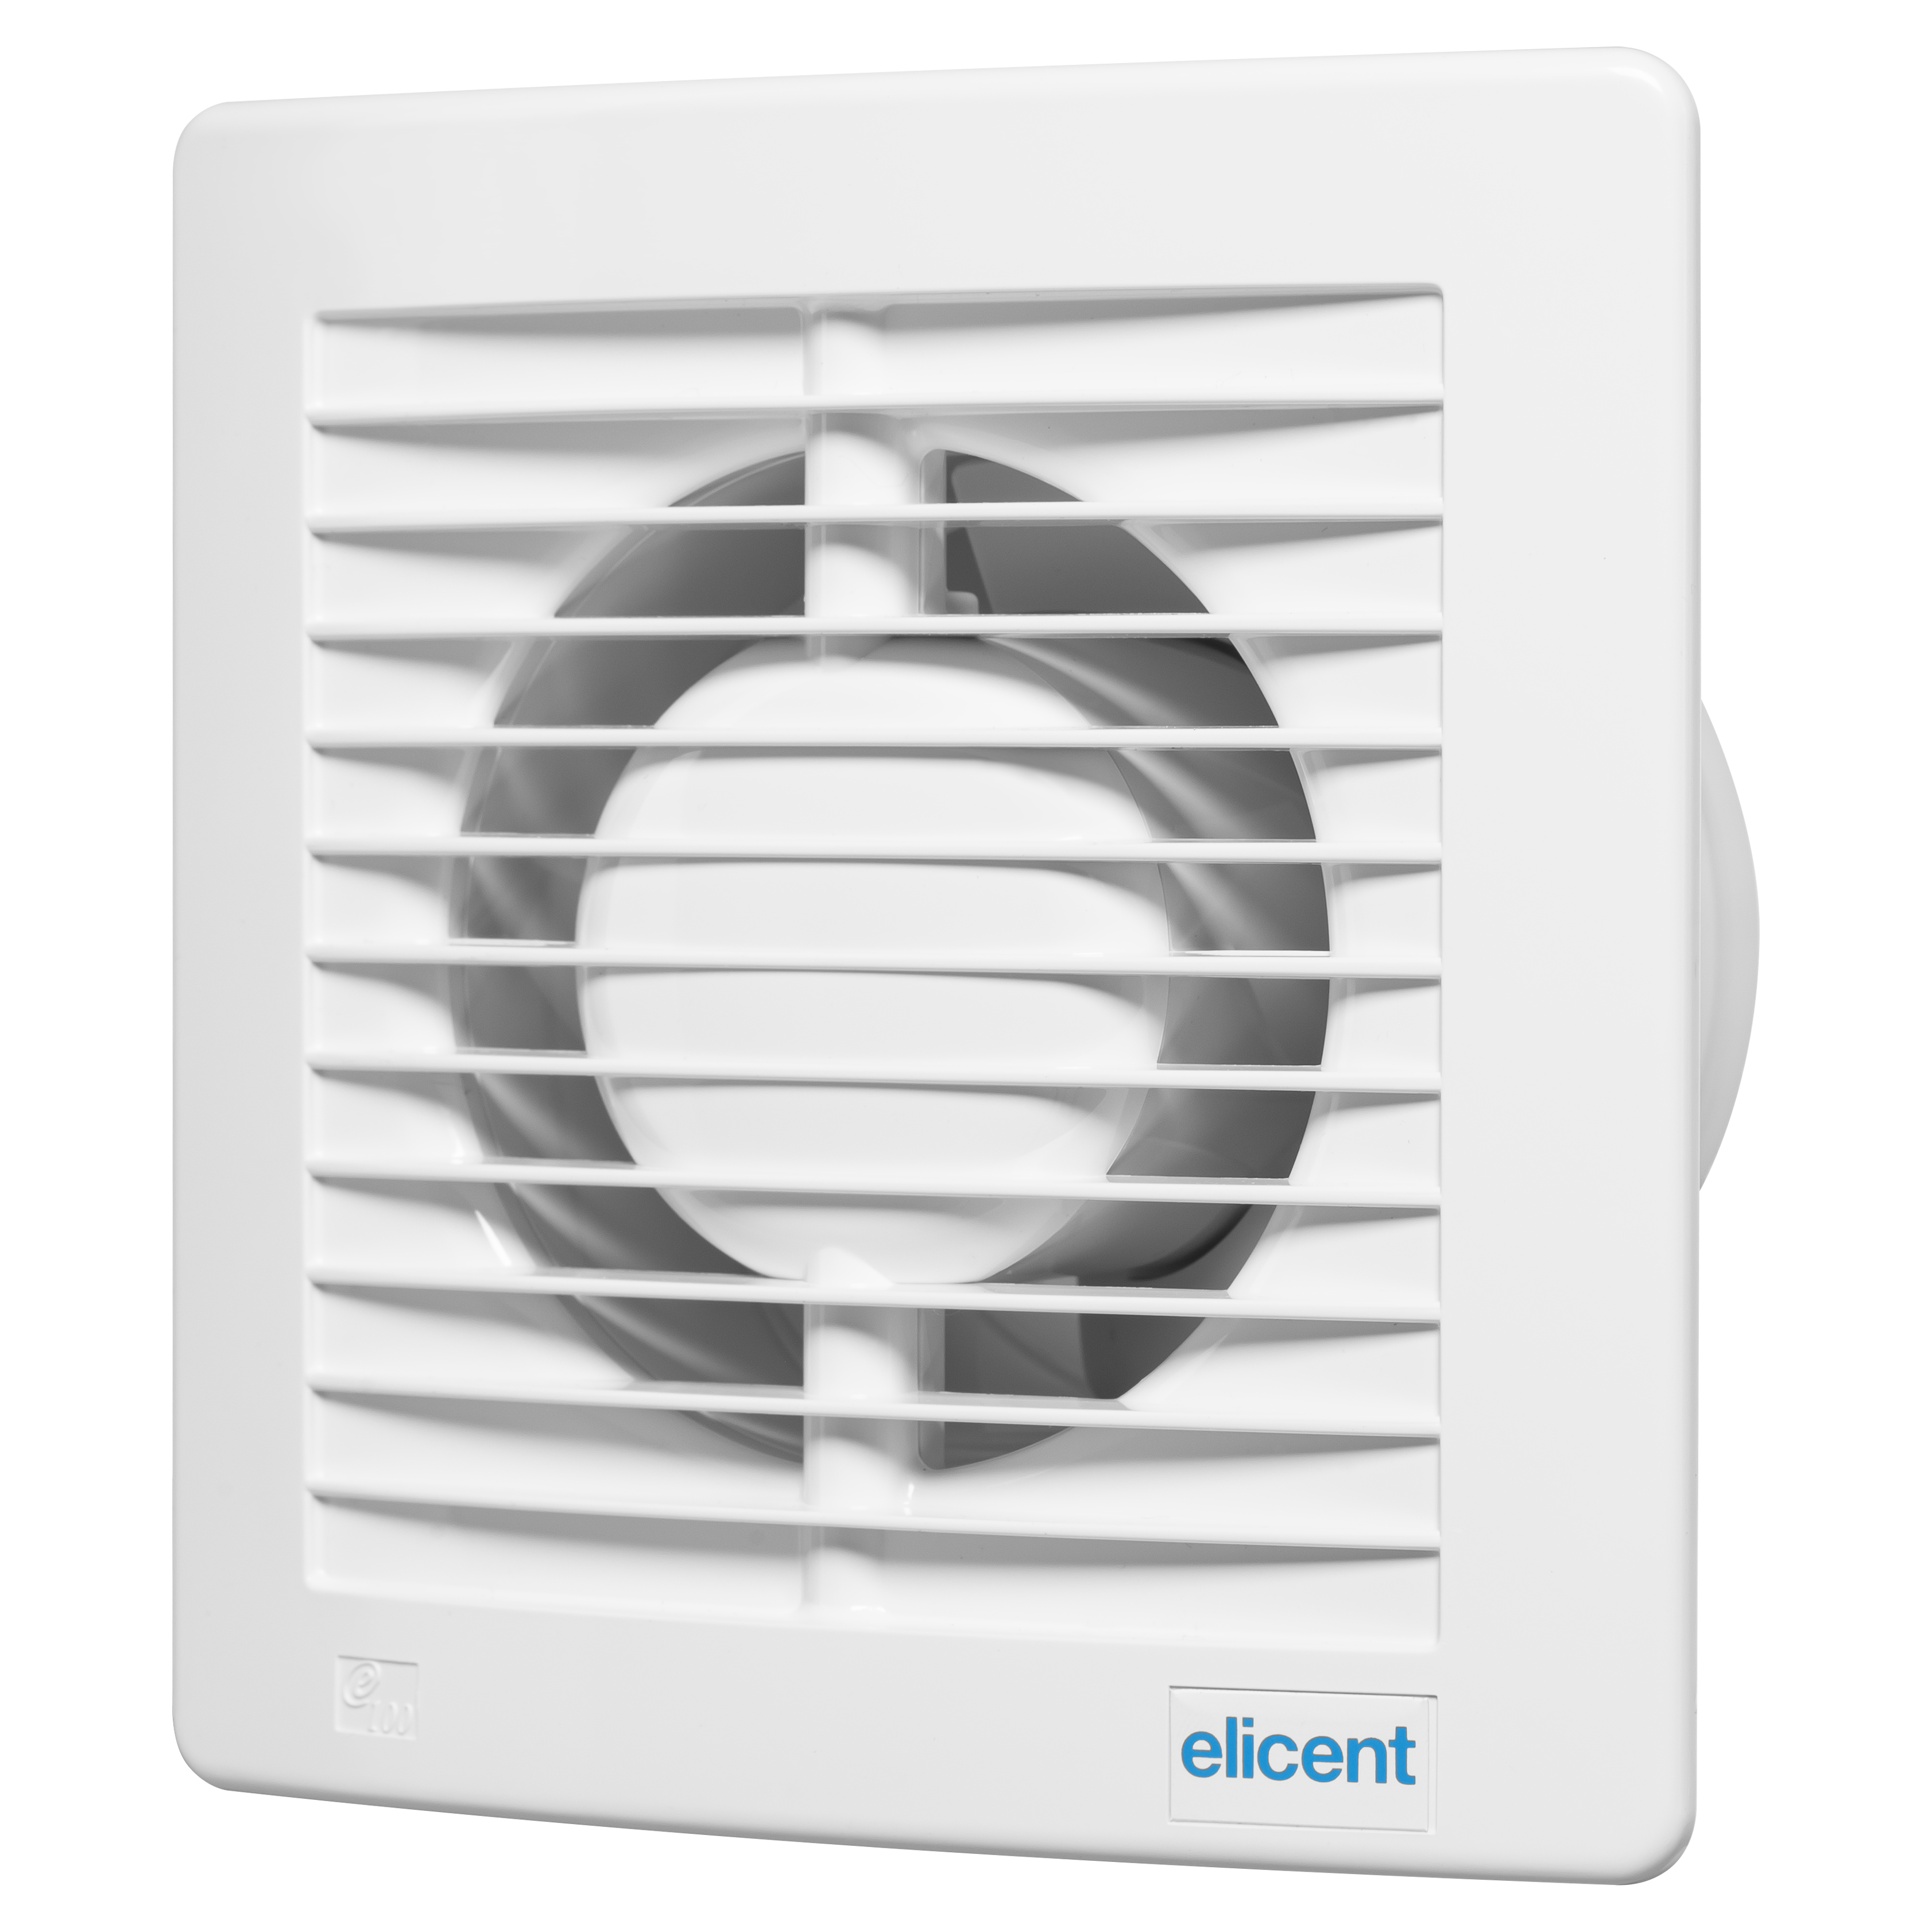 Отзывы вытяжной вентилятор elicent потолочный Elicent E-STYLE 100 TREND G BASE в Украине